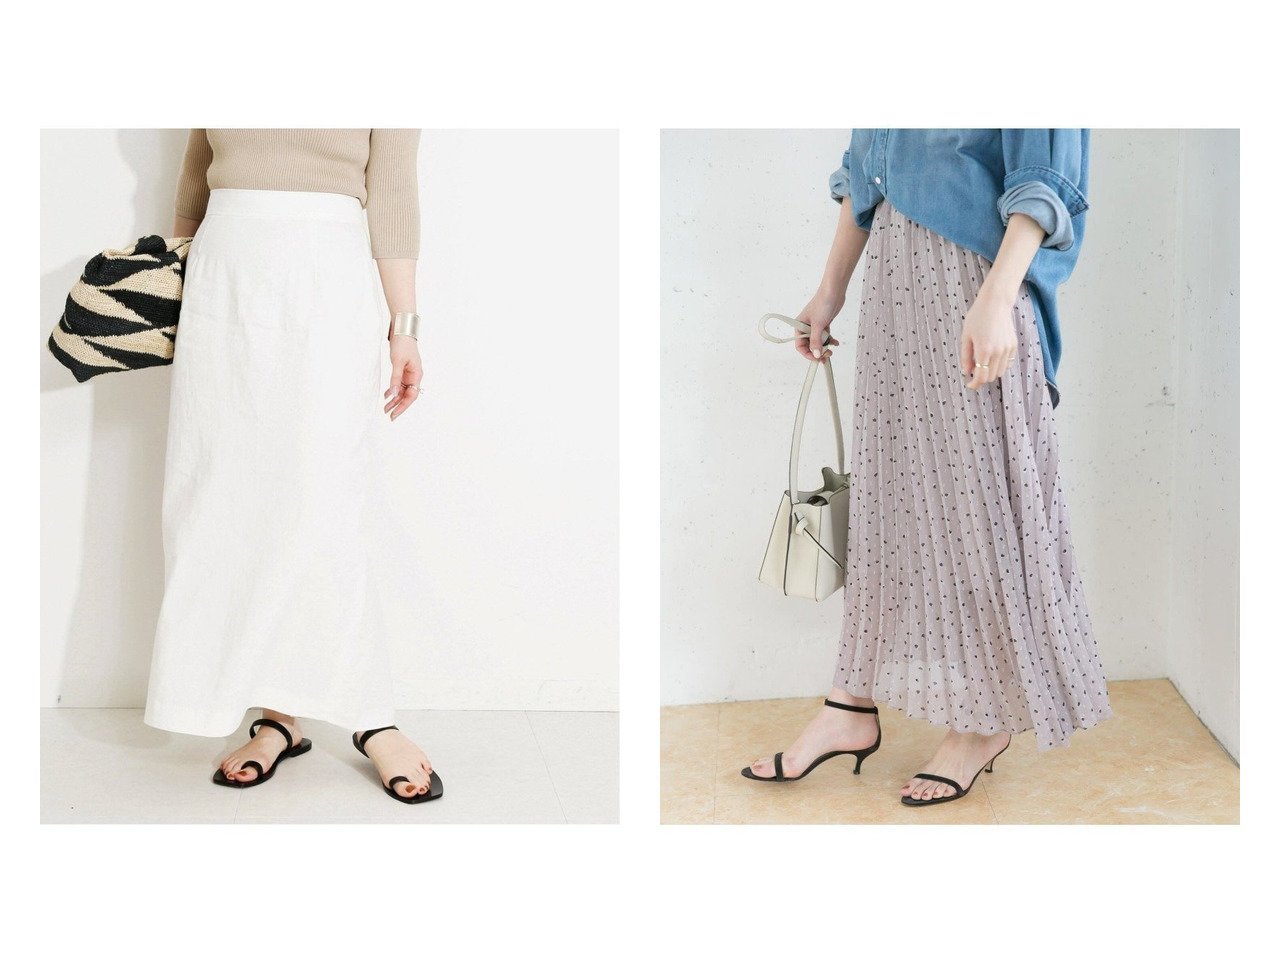 期間限定で特別価格 新品 美品 VERMEIL par iena ロング スカート